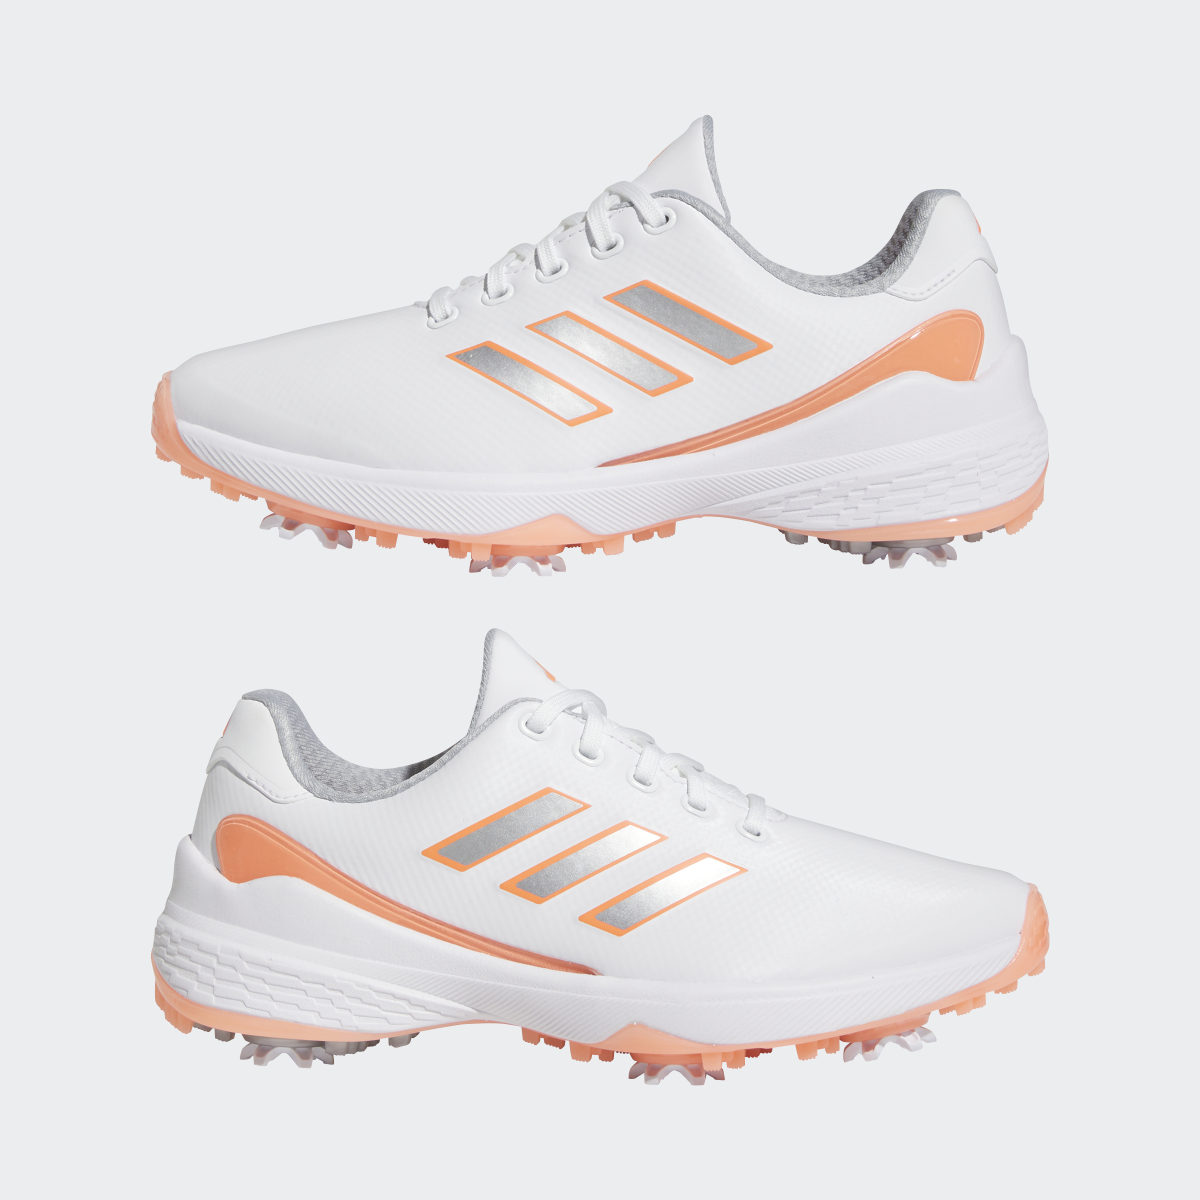 Adidas ZG23 Golf Shoes. 14